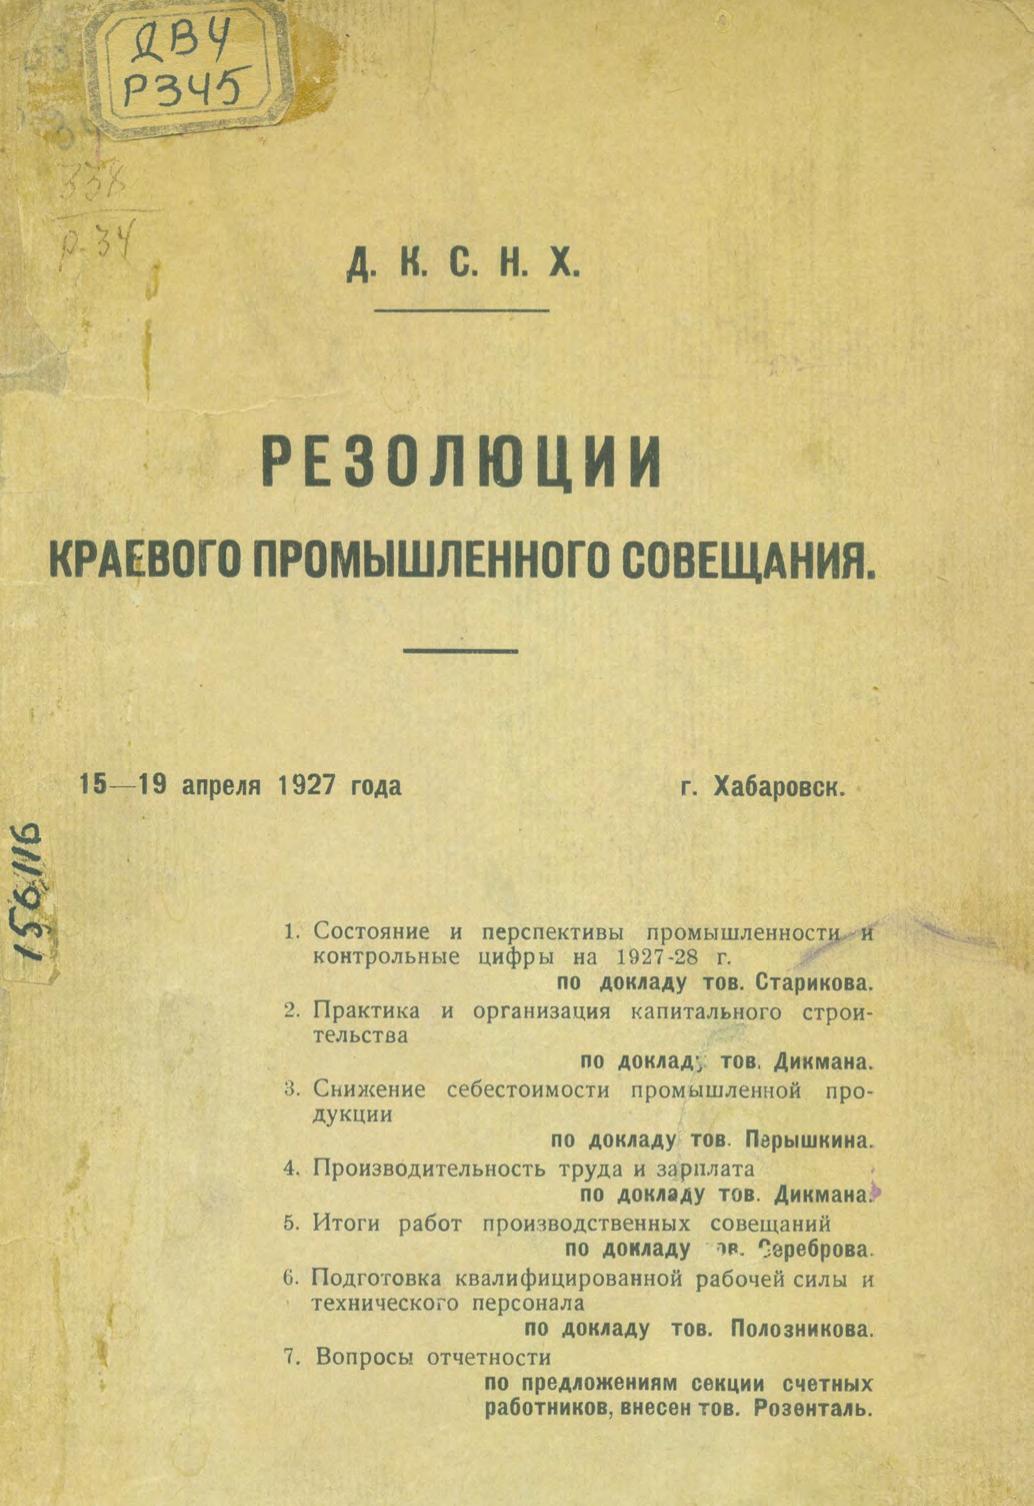 Резолюции краевого промышленного совещания, 15-19 апреля 1927 года, г. Хабаровск